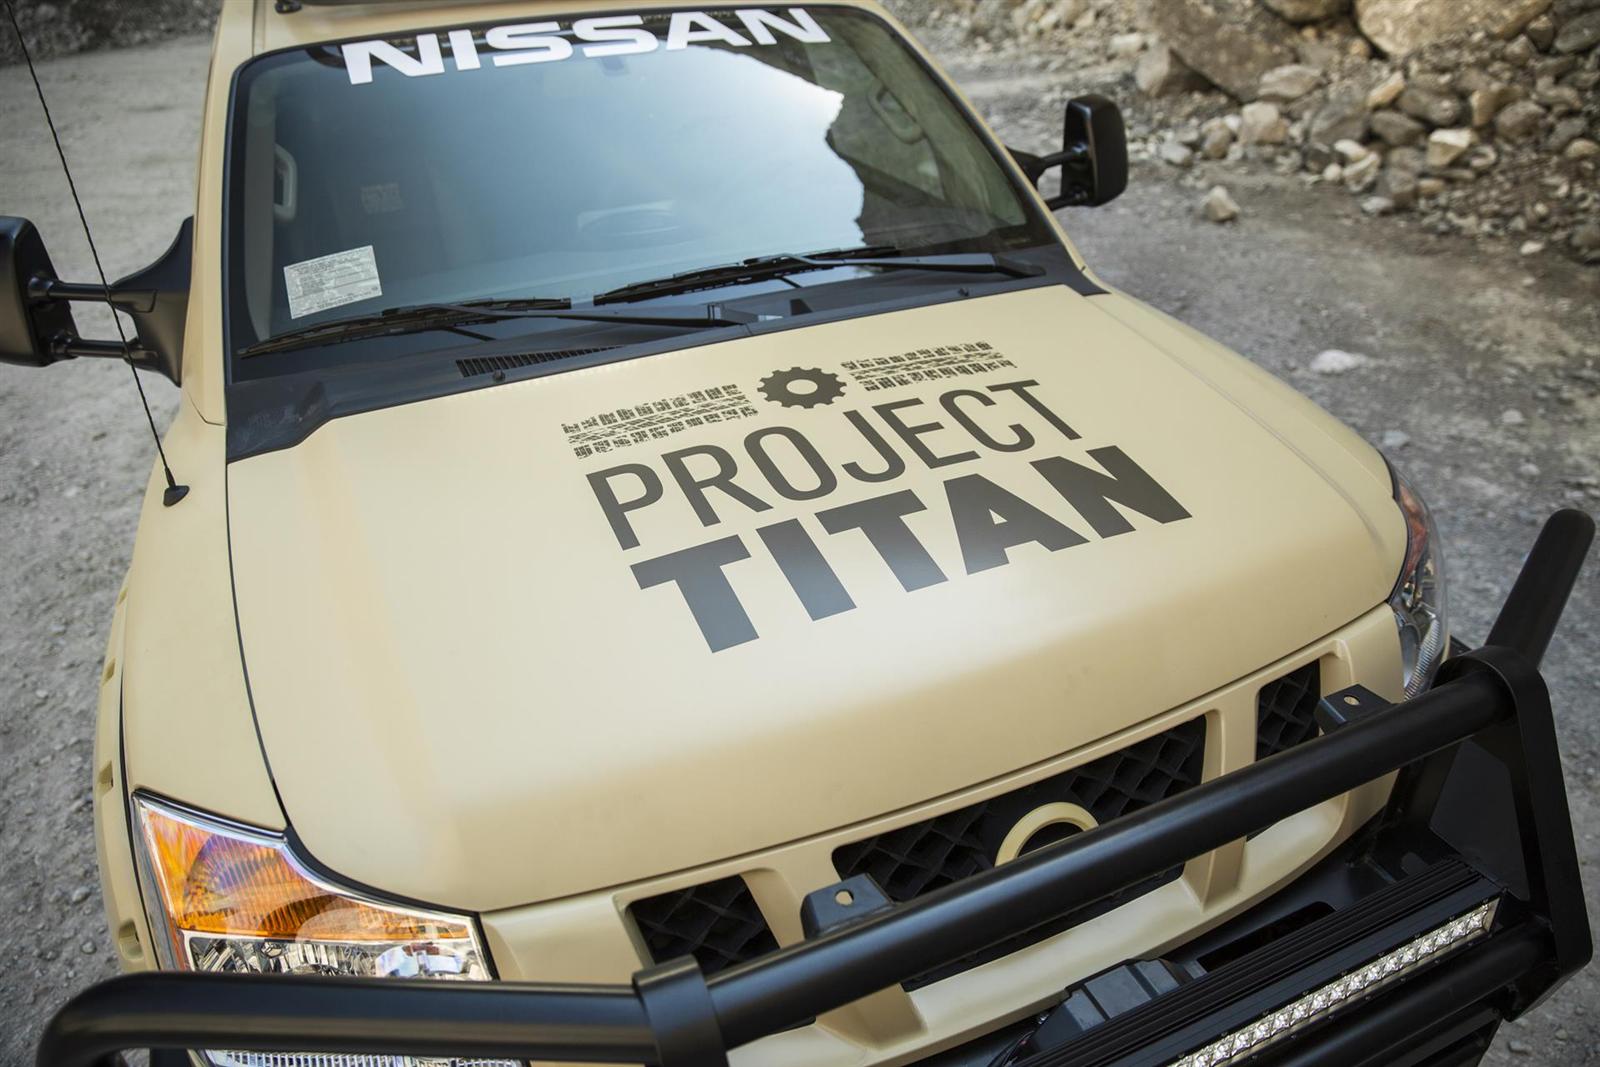 2014 Nissan Project Titan